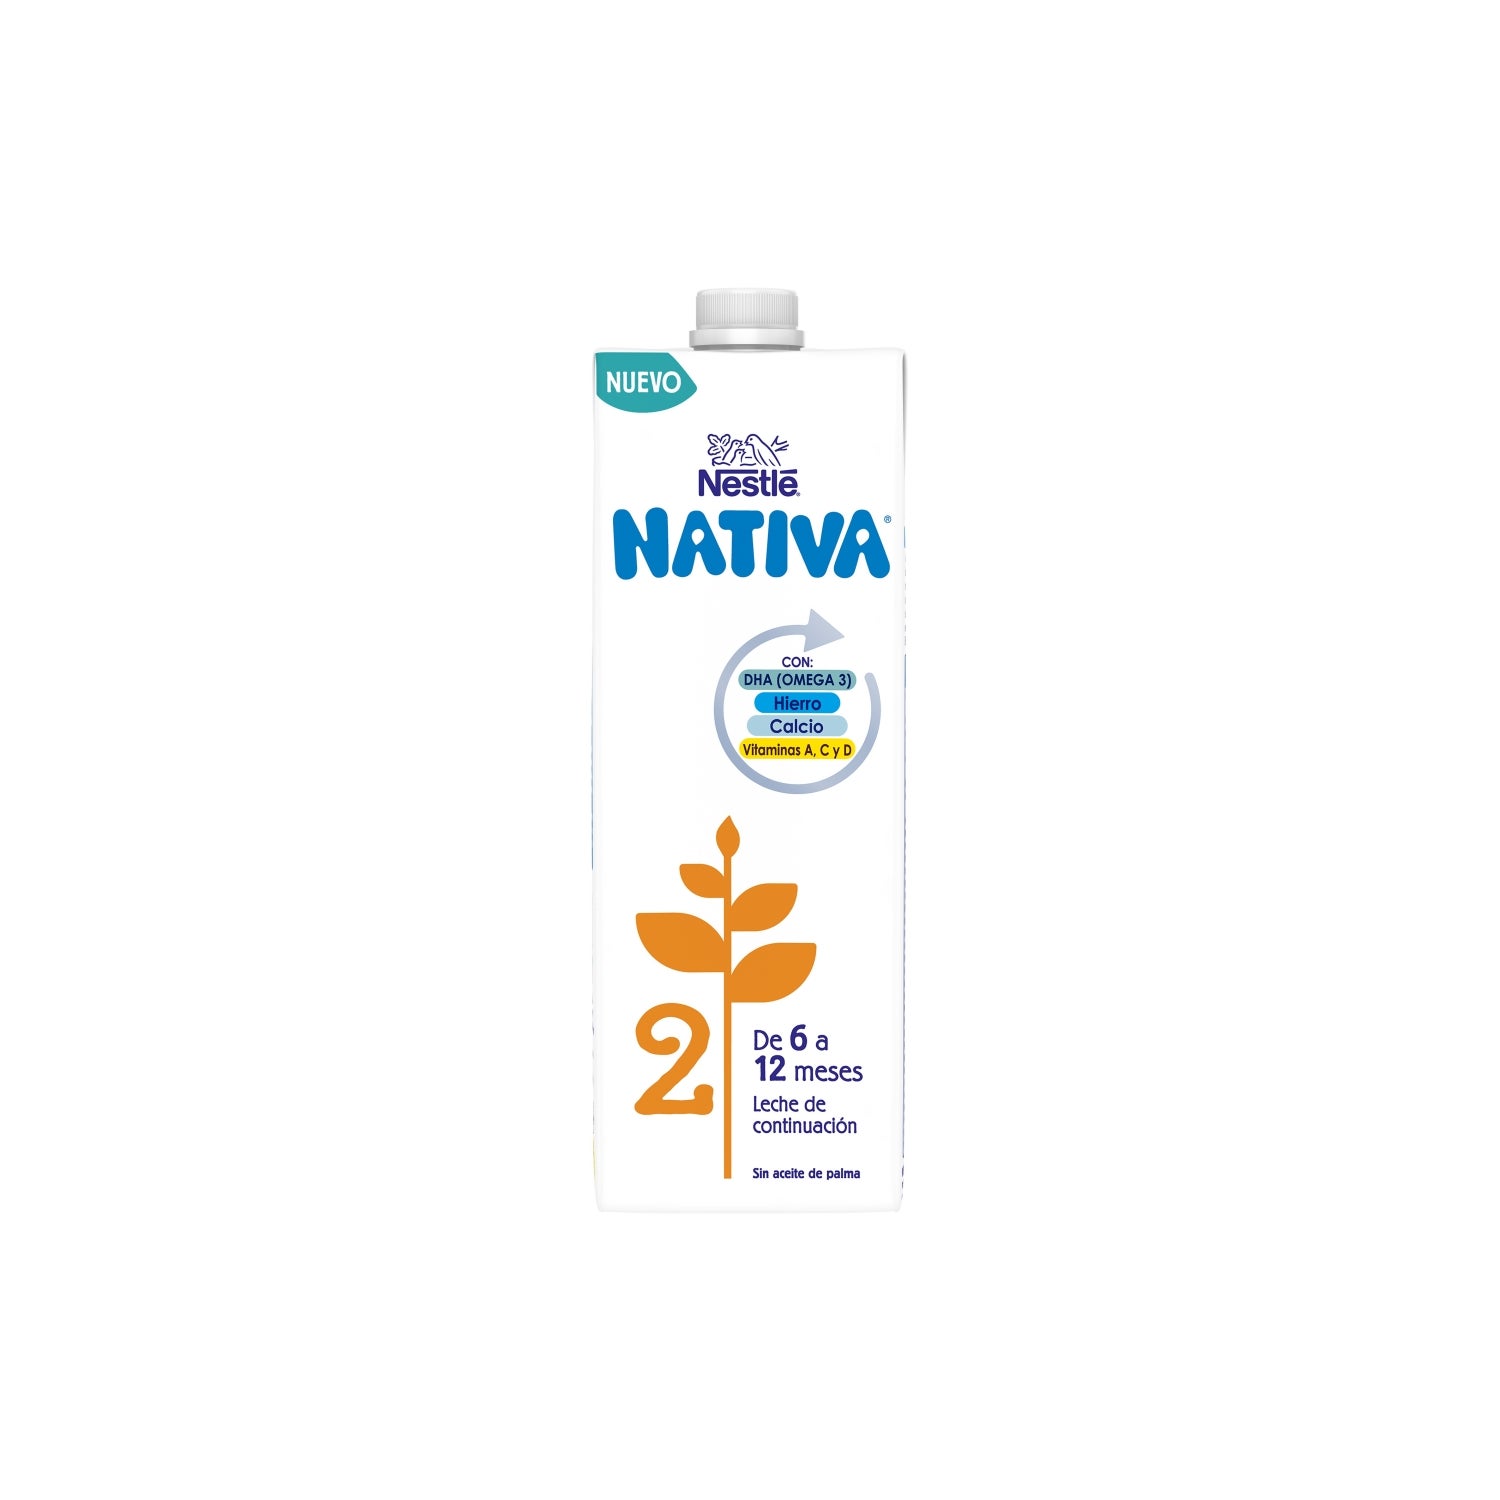 Nestlé Nativa® 3 800g.